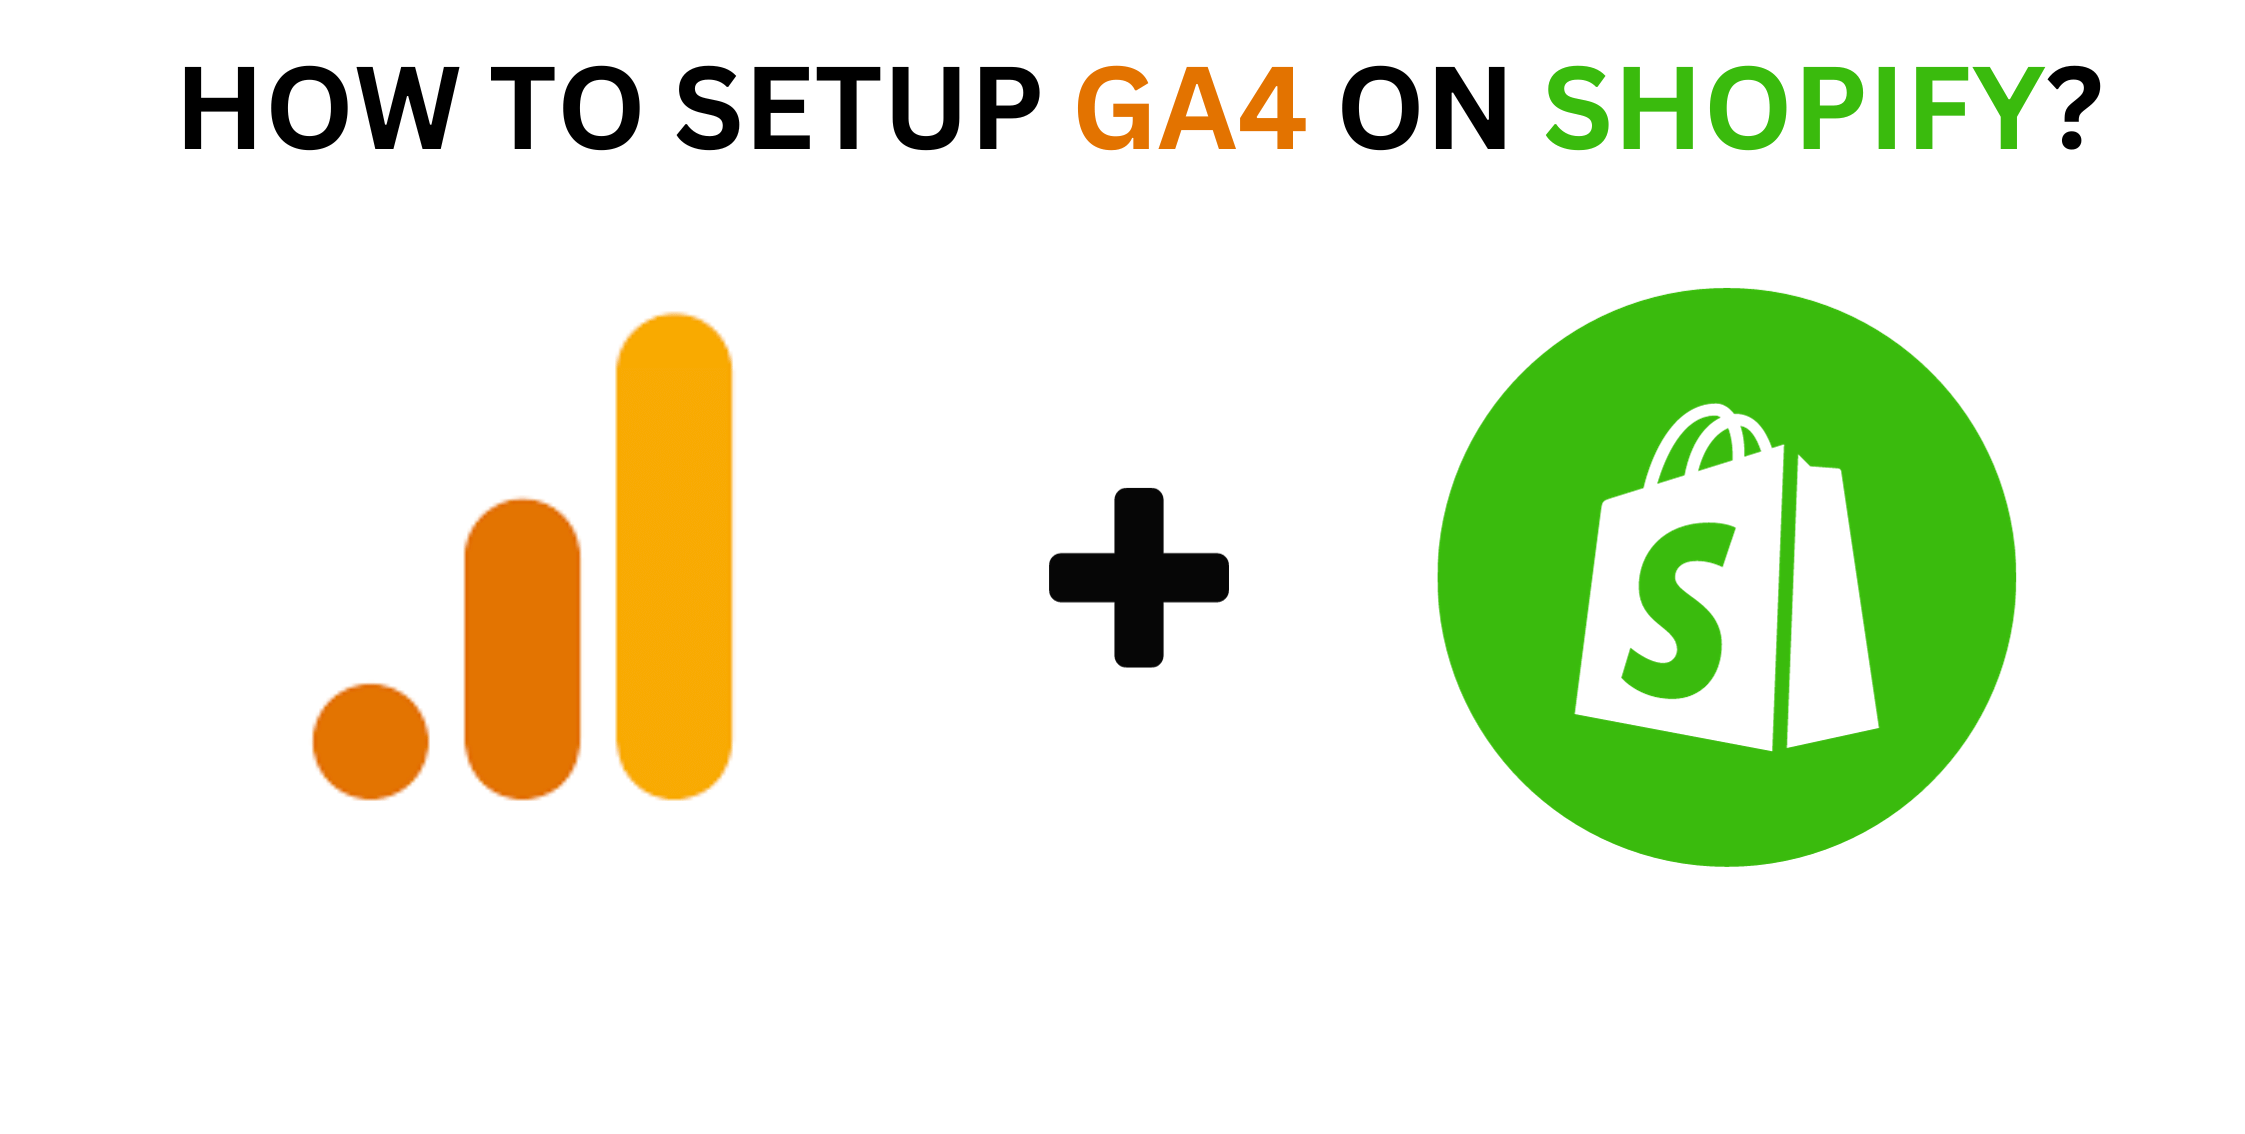 How to Setup GA4 on Shopify?